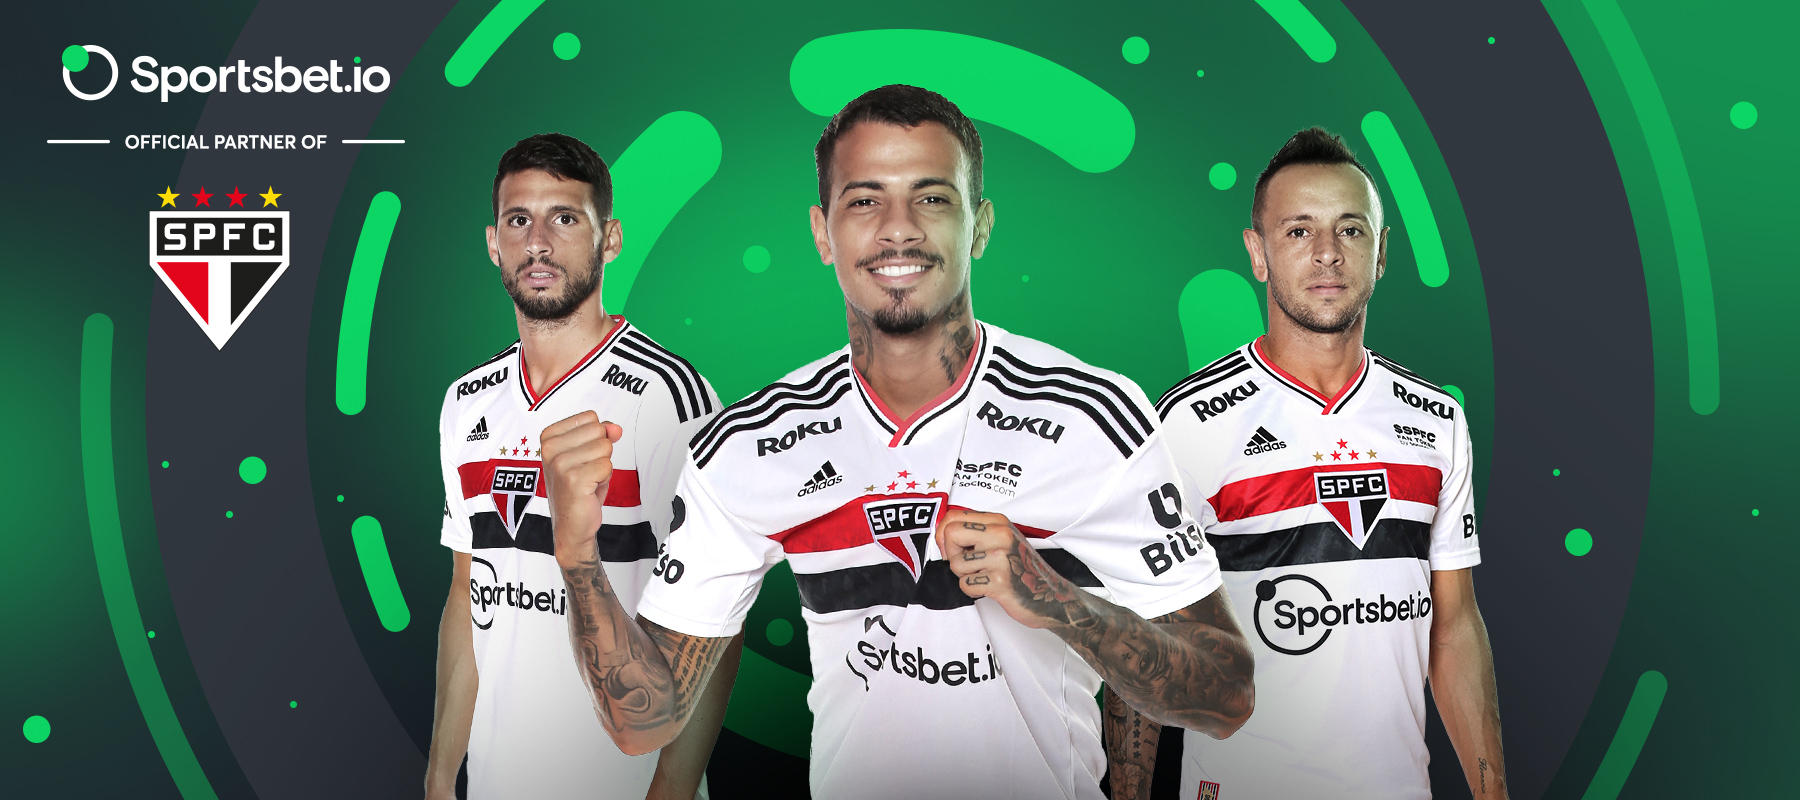 Lerne die Partner von Sportsbet.io kennen: São Paulo FC